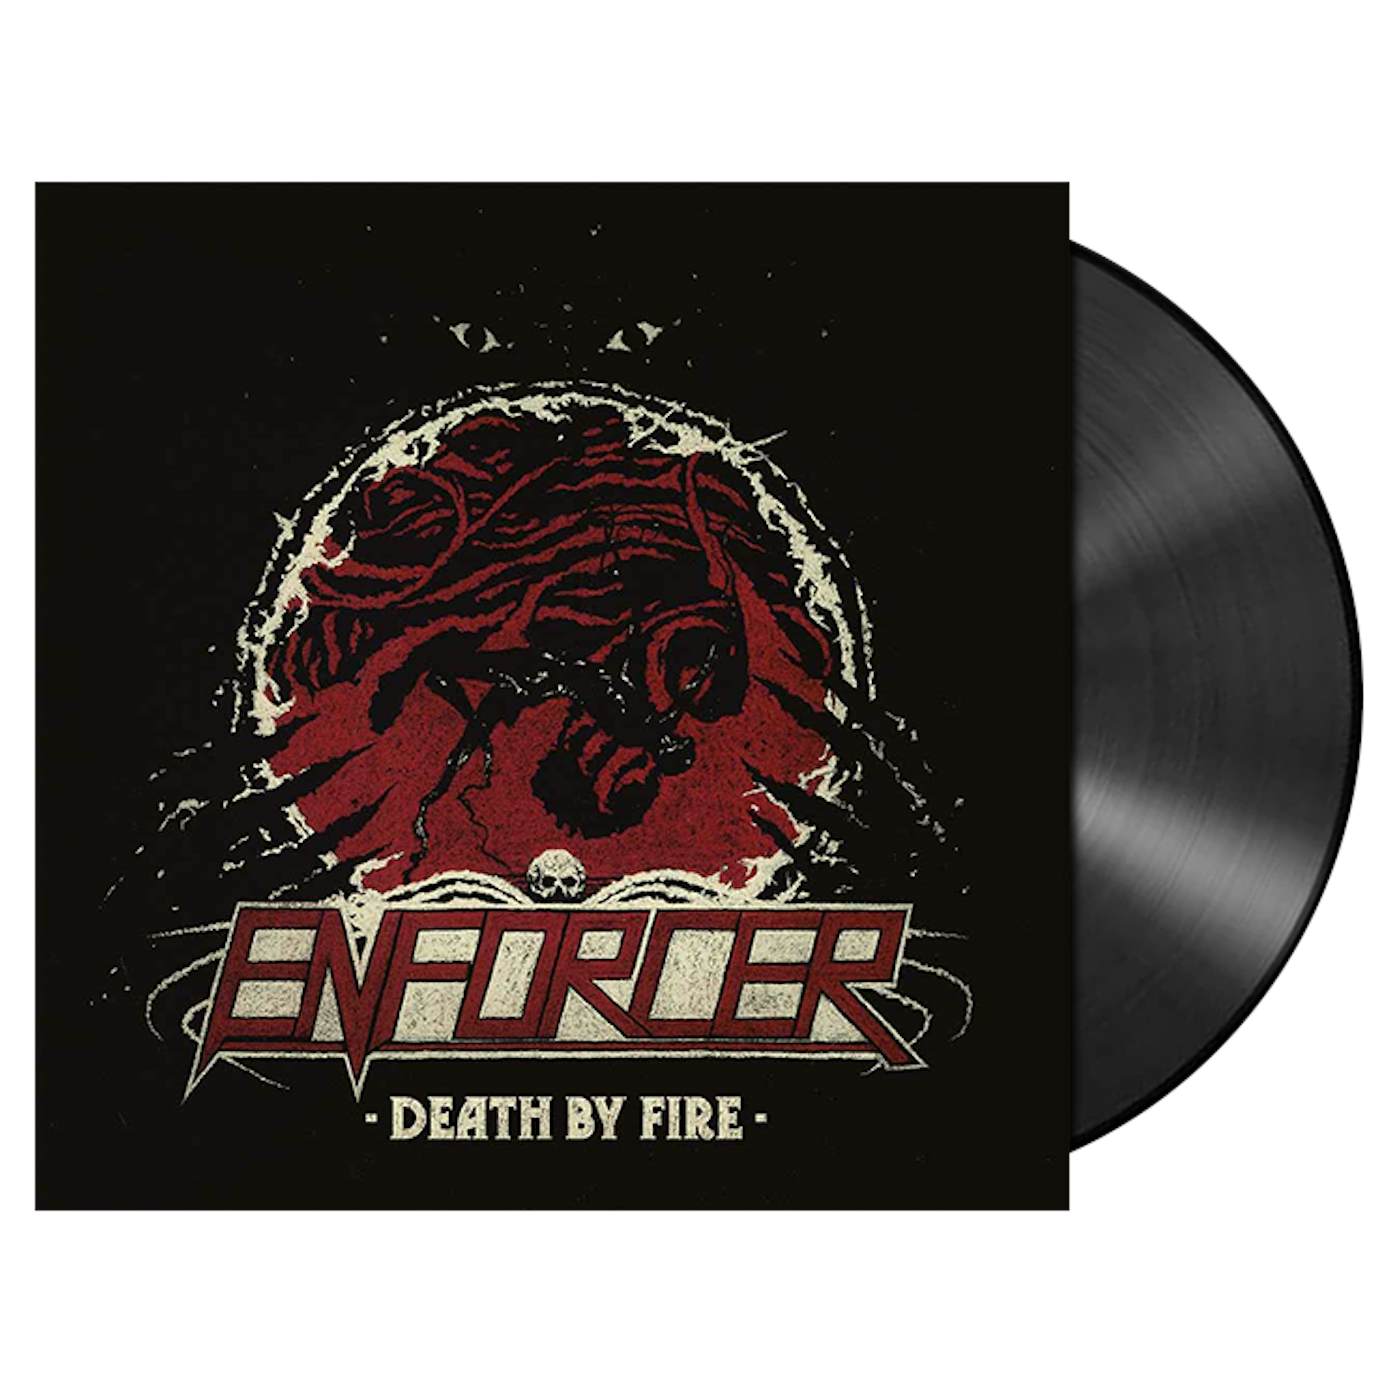 ENFORCER - 'Death By Fire' LP (Vinyl)